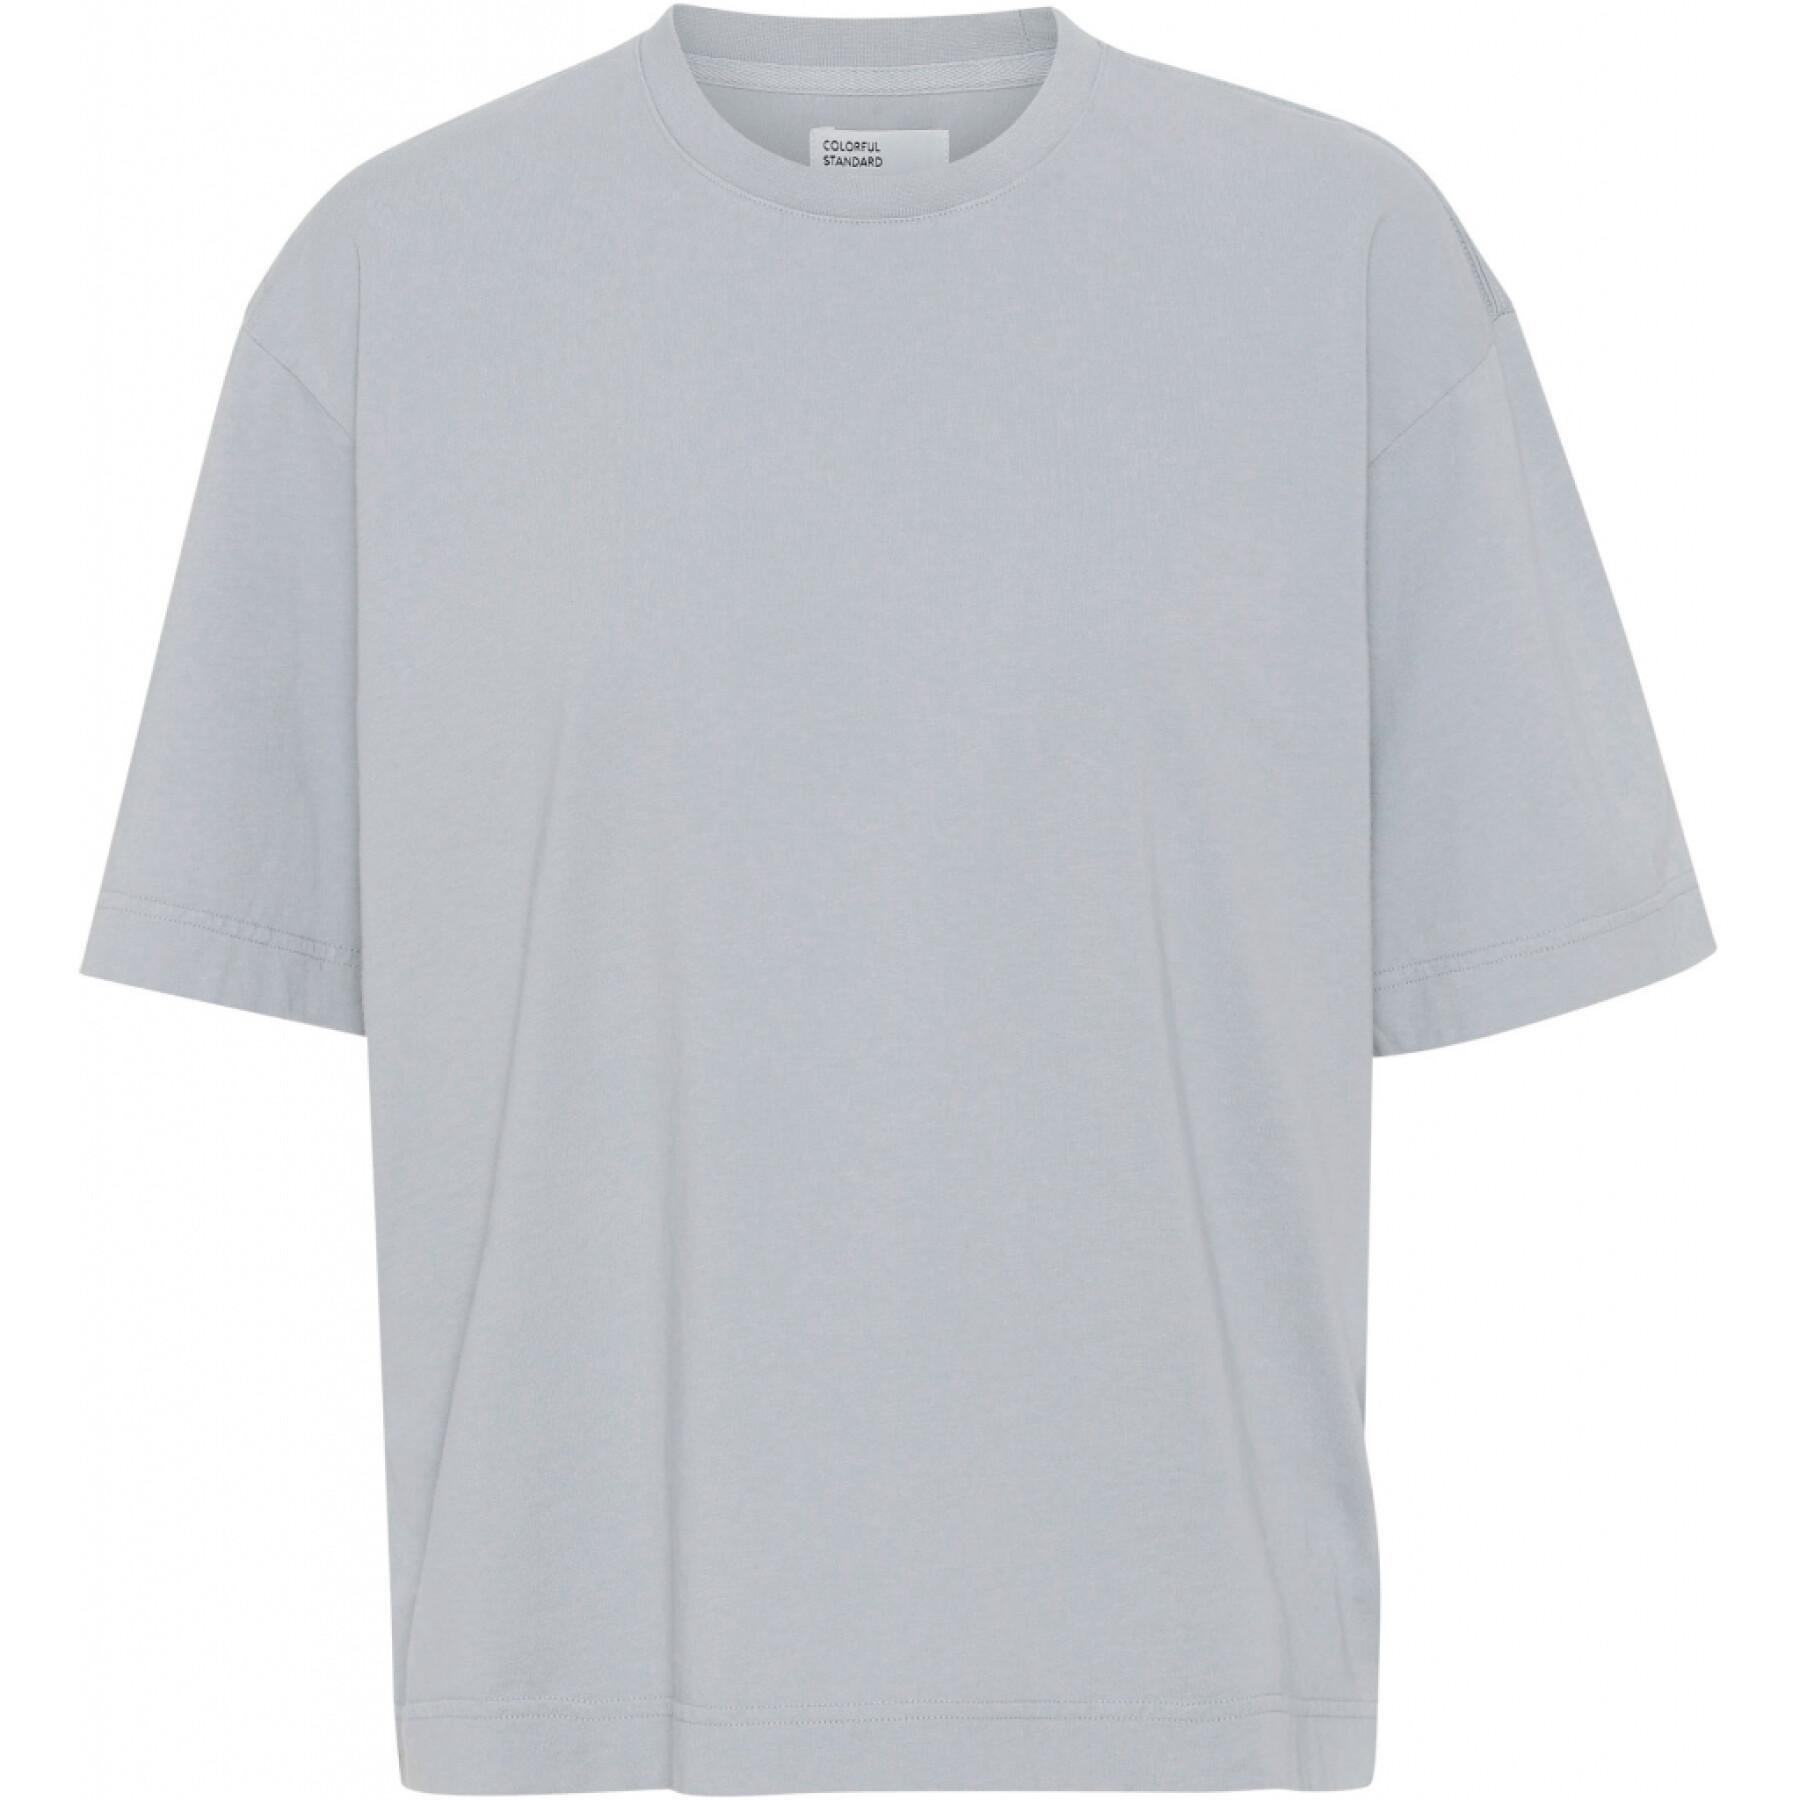 Women's T-shirt Colorful Standard Organic oversized limestone grey